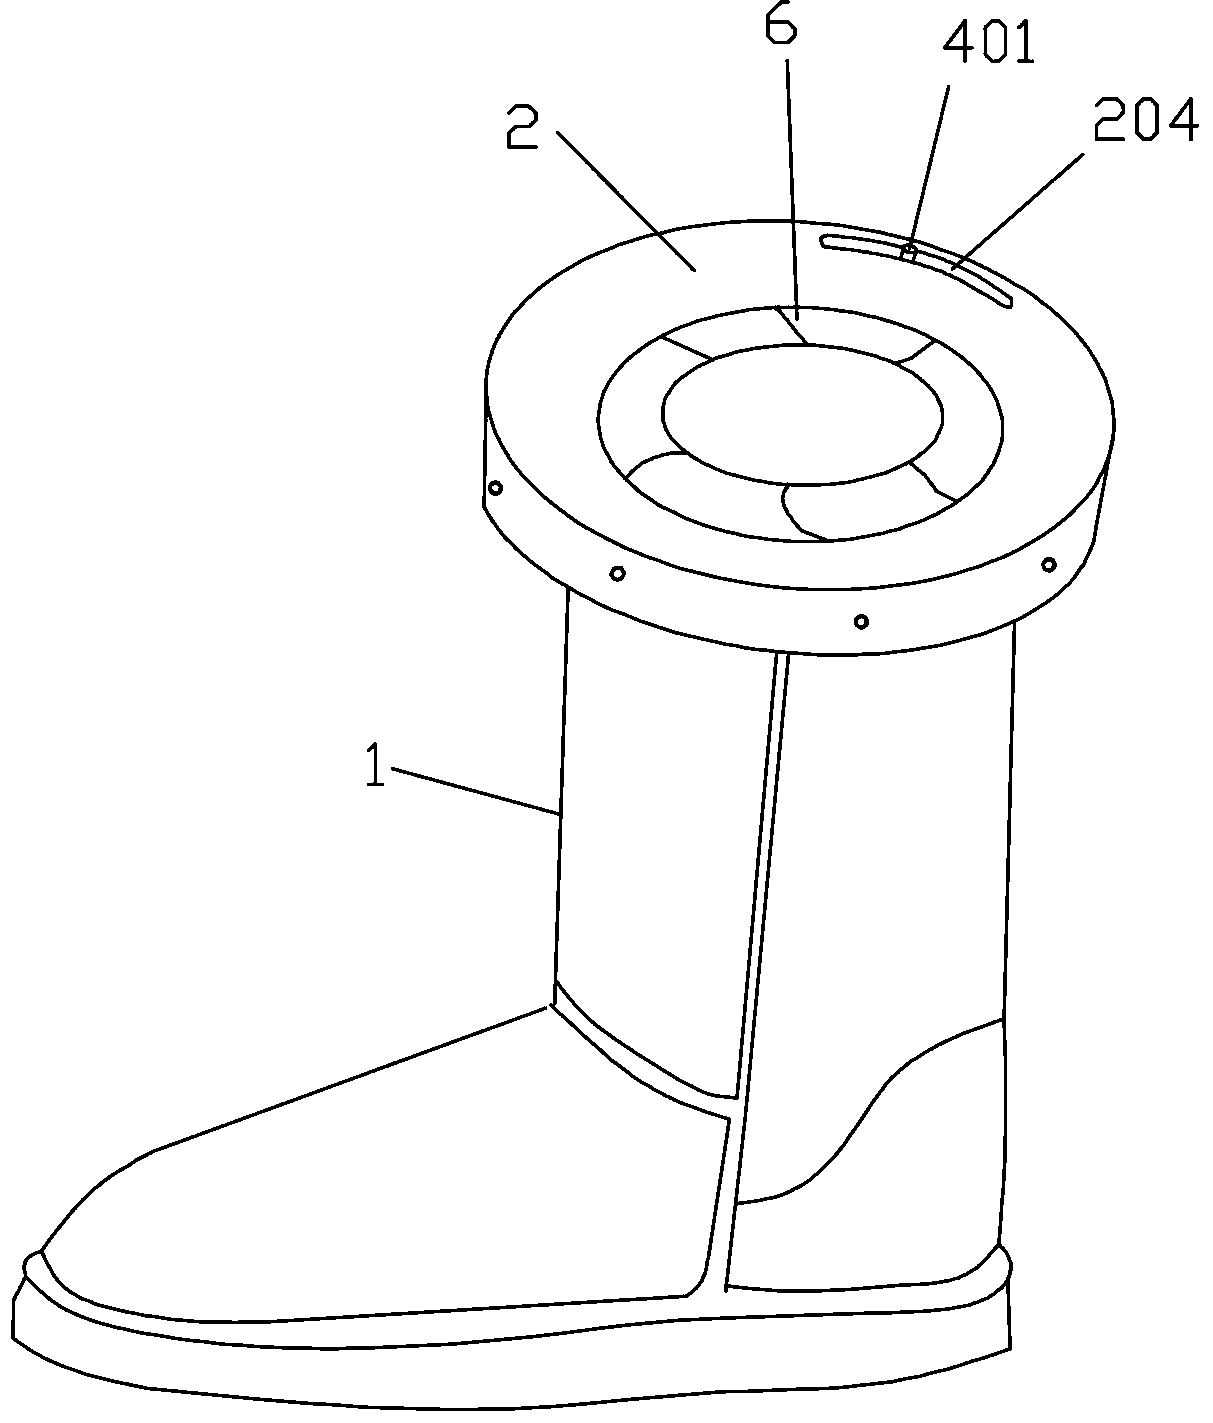 Boots adjustable in opening diameter